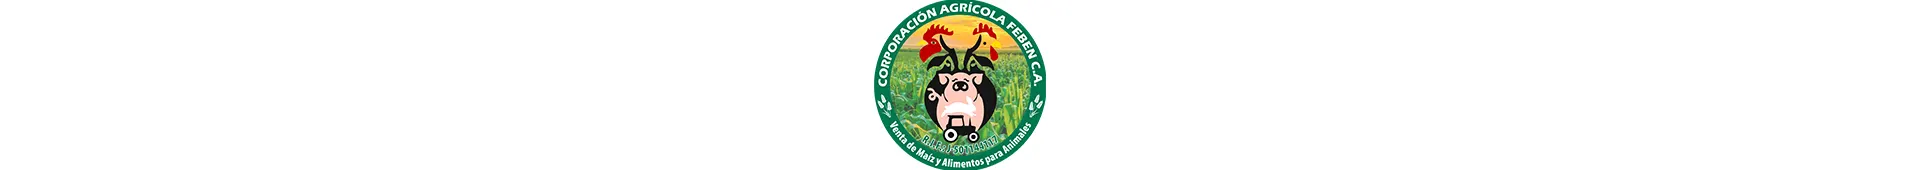 Imagen 1 del perfil de Corporación Agrícola Feben CA